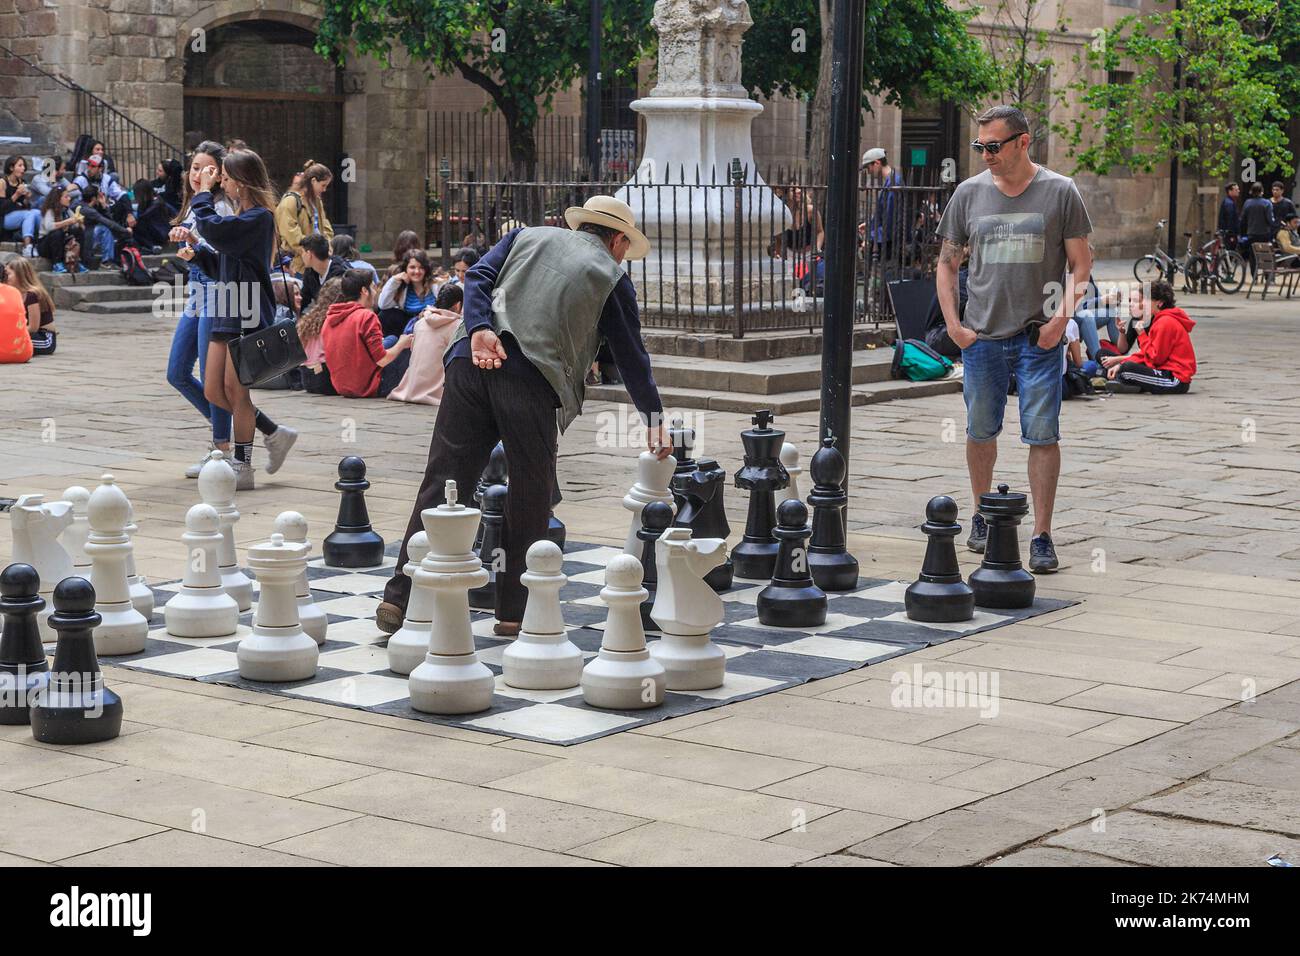 BARCELONE, ESPAGNE - 10 MAI 2017 : des personnes non identifiées se détendent et jouent aux échecs géants dans la cour de la Bibliothèque de littérature catalane. Banque D'Images